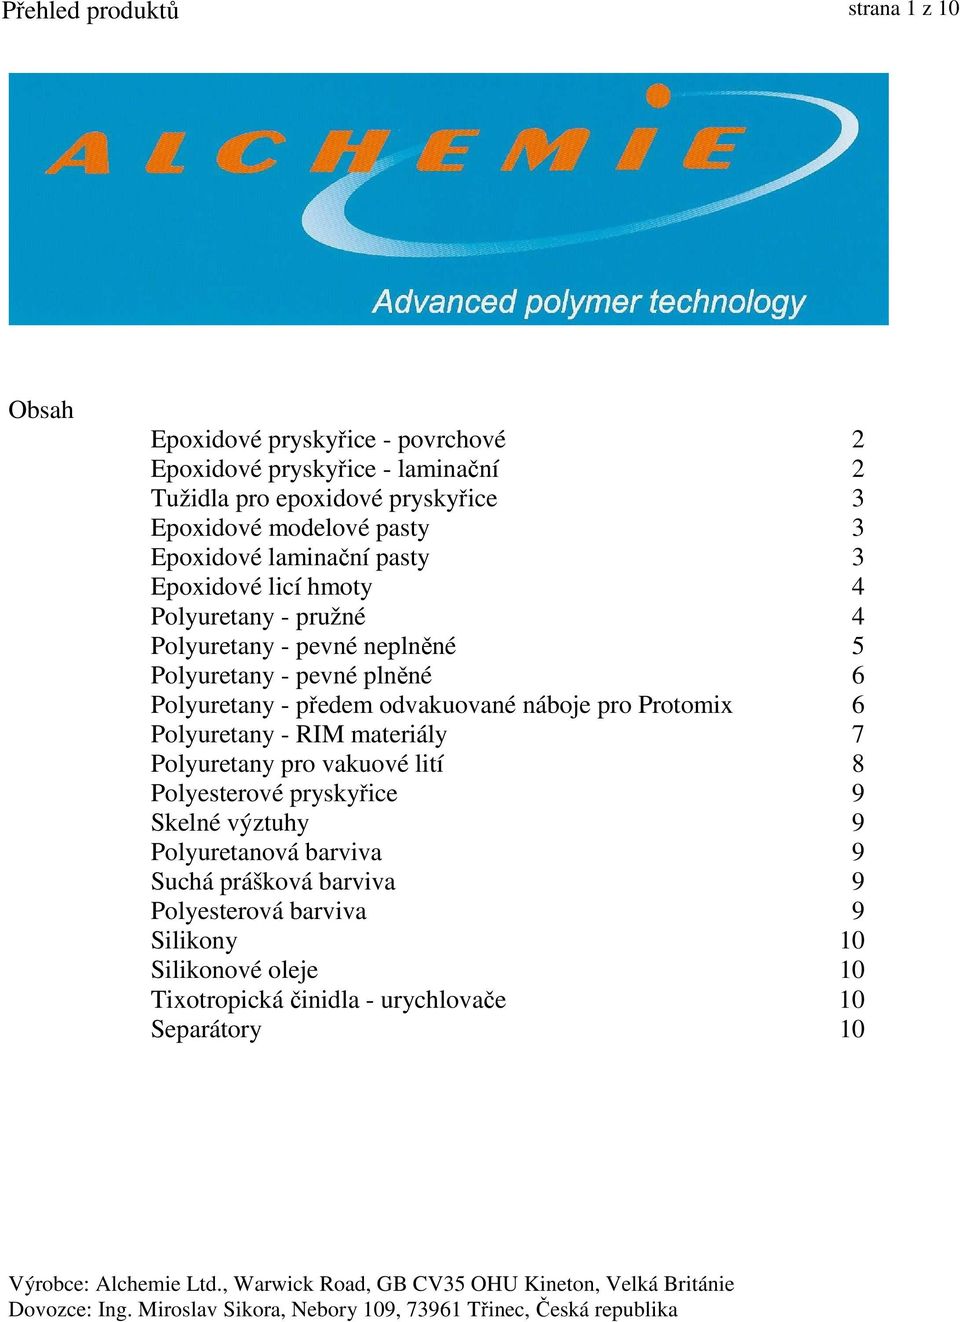 Přehled produktů strana 1 z 10 - PDF Stažení zdarma